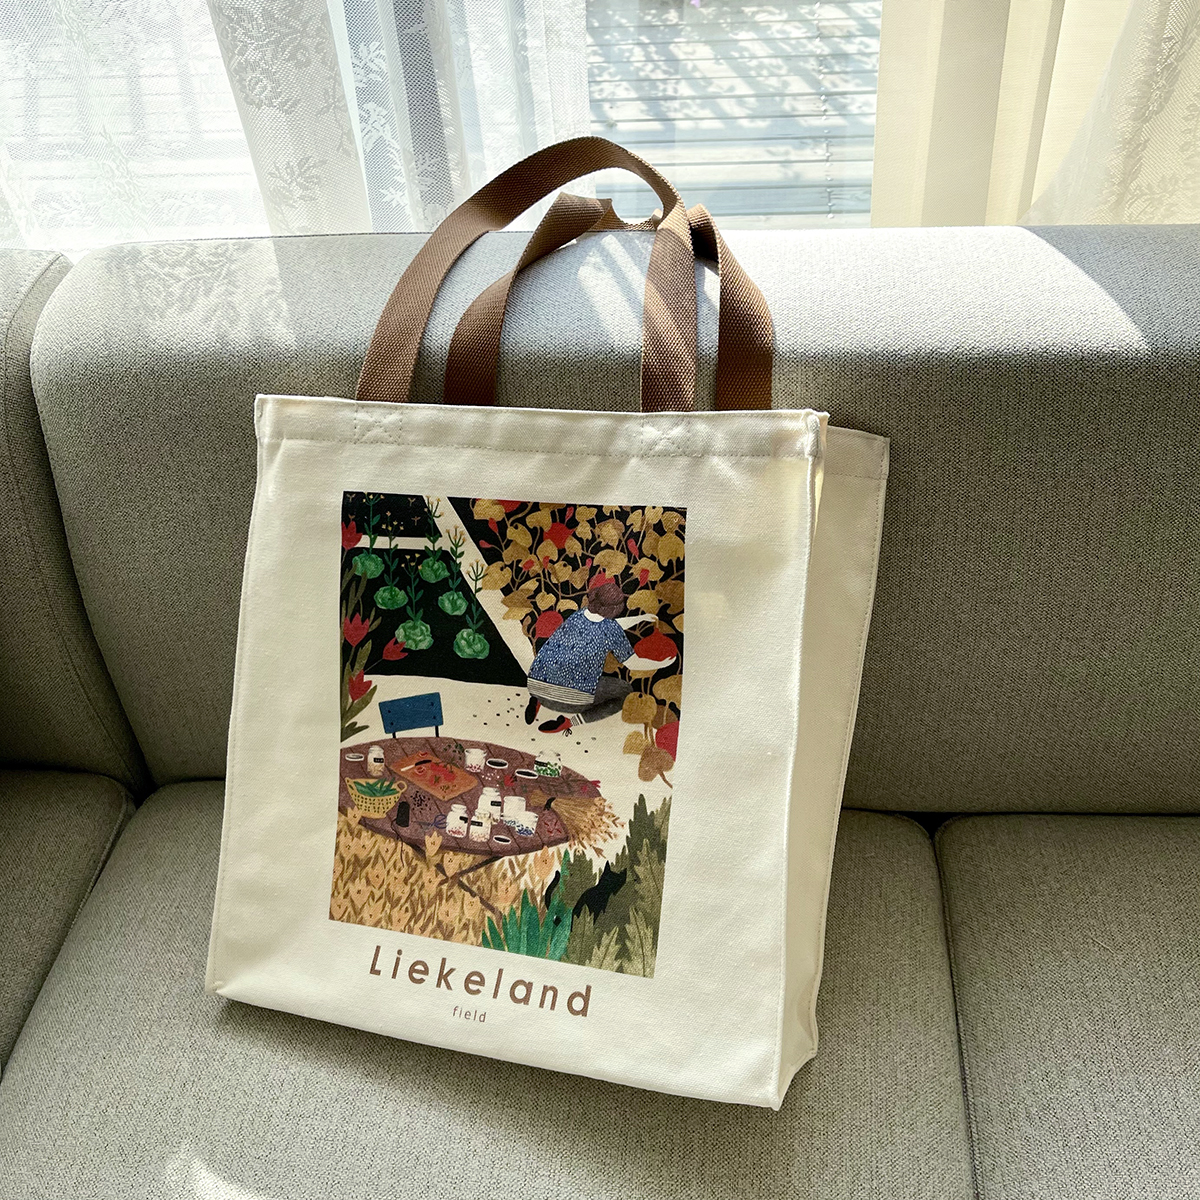 治愈印花环保购物袋通勤女包 荷兰艺术家Liekeland插画帆布袋竖款